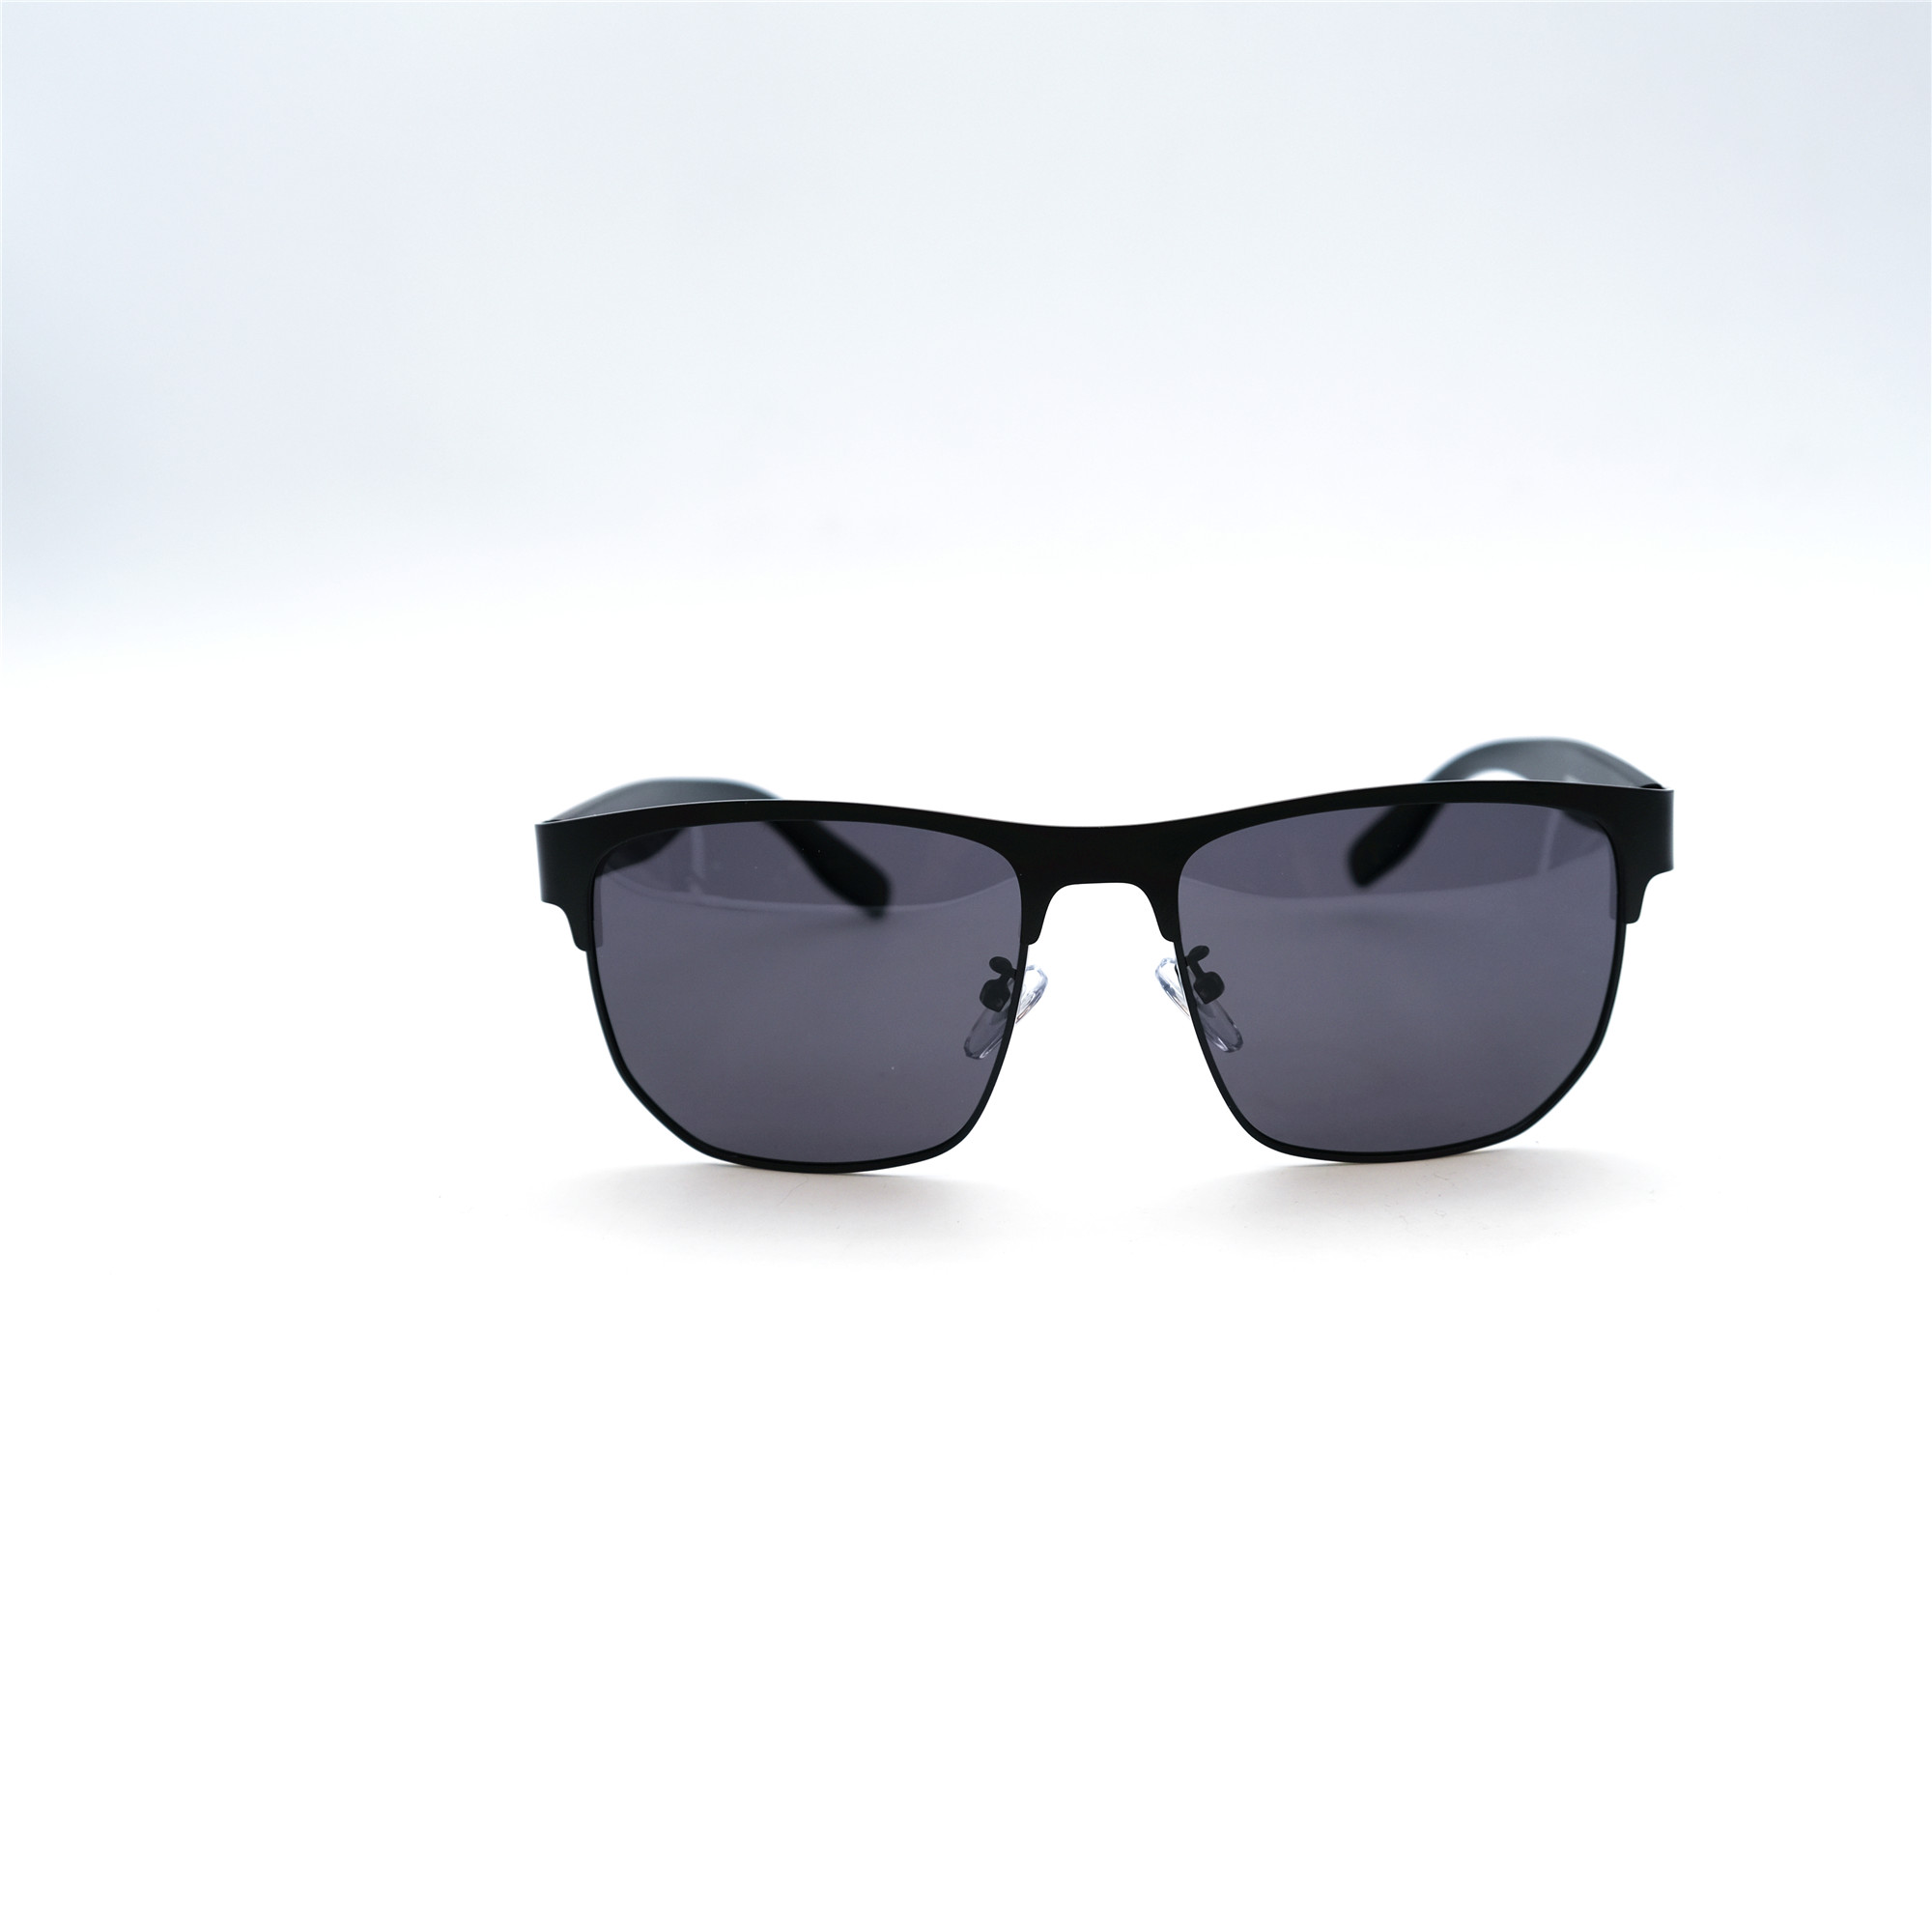  Солнцезащитные очки картинка Мужские Pomiled Polarized Квадратные 08220-C4-08 